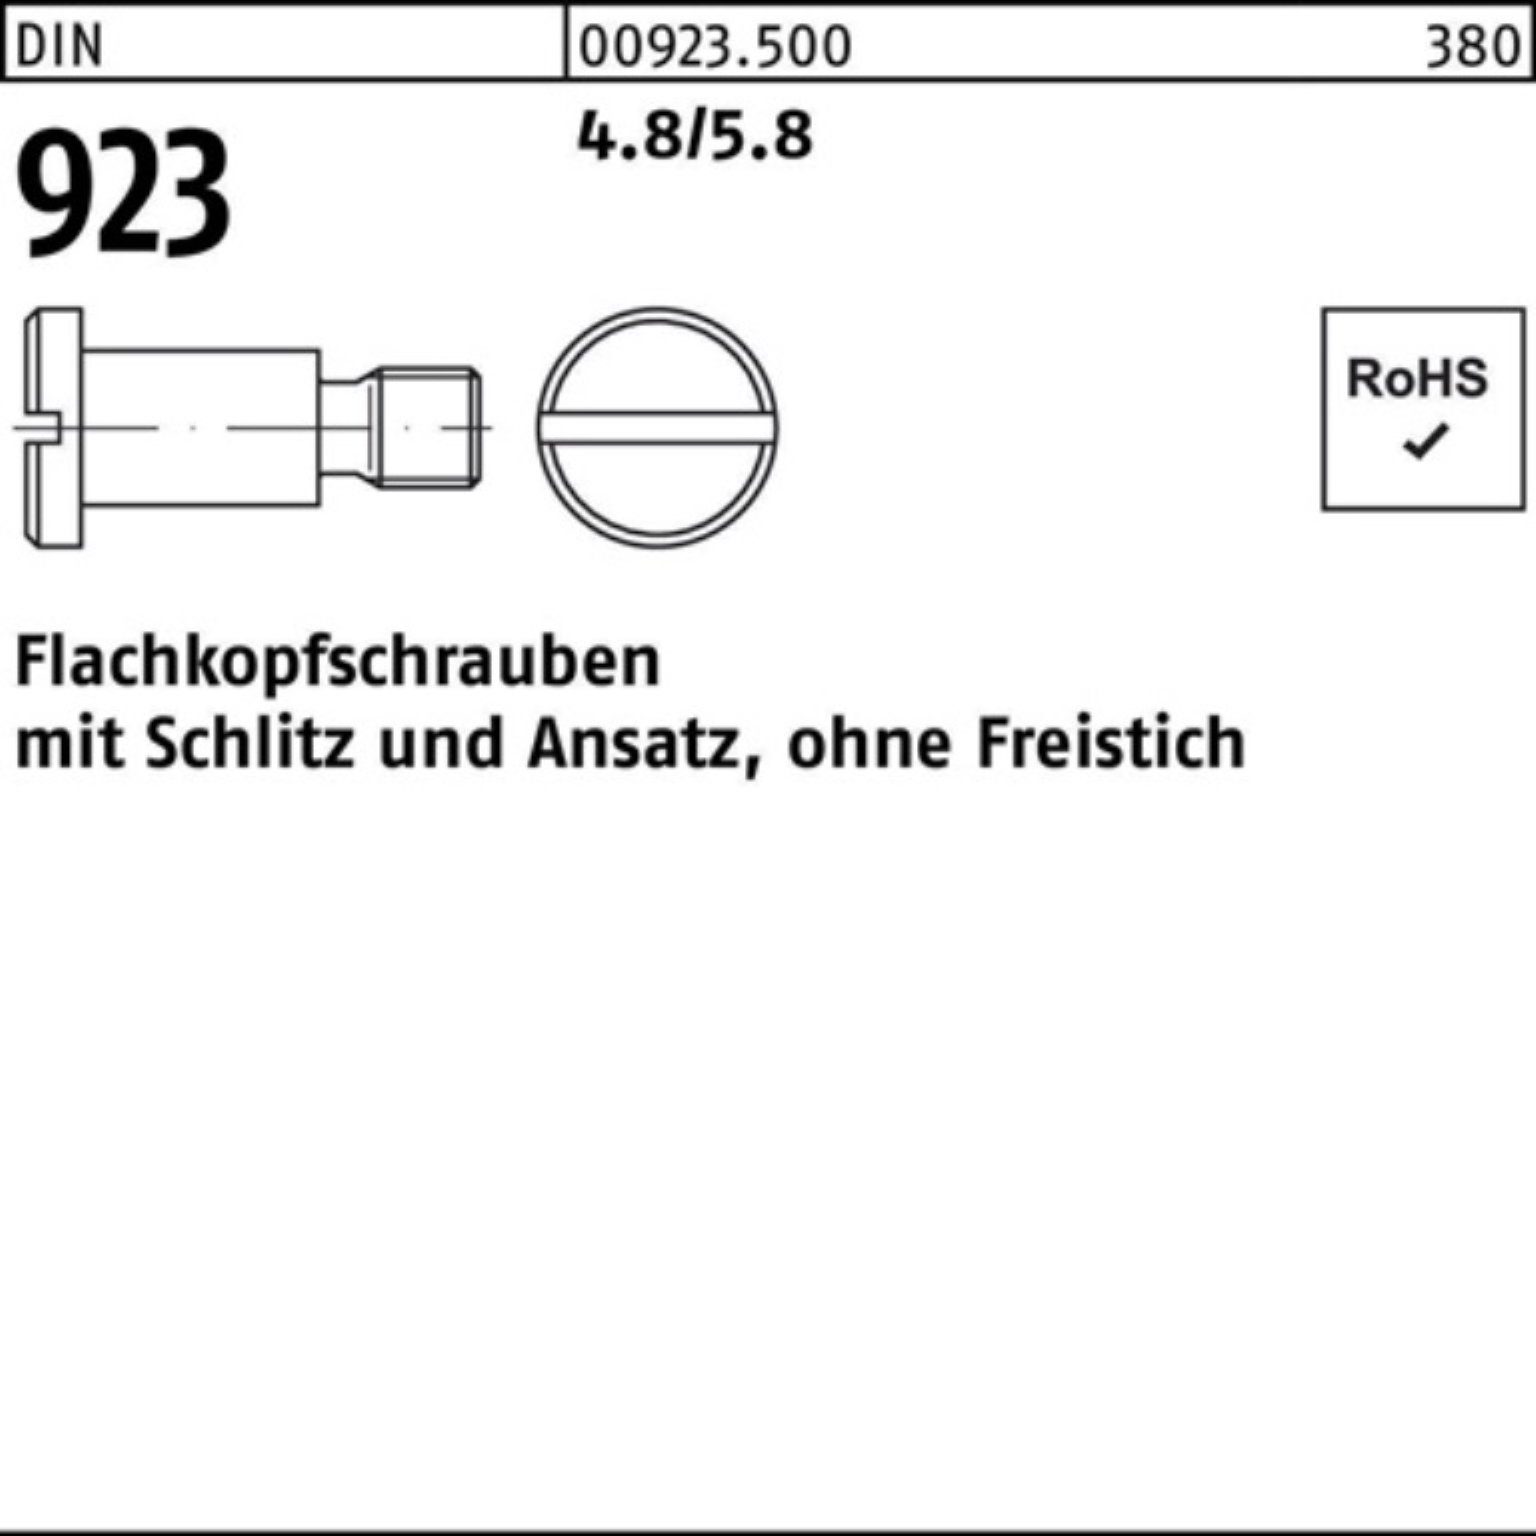 Reyher Schraube 4.8/5.8 923 100er 9,0 Schlitz/Ansatz Flachkopfschraube DIN Pack M6x12x